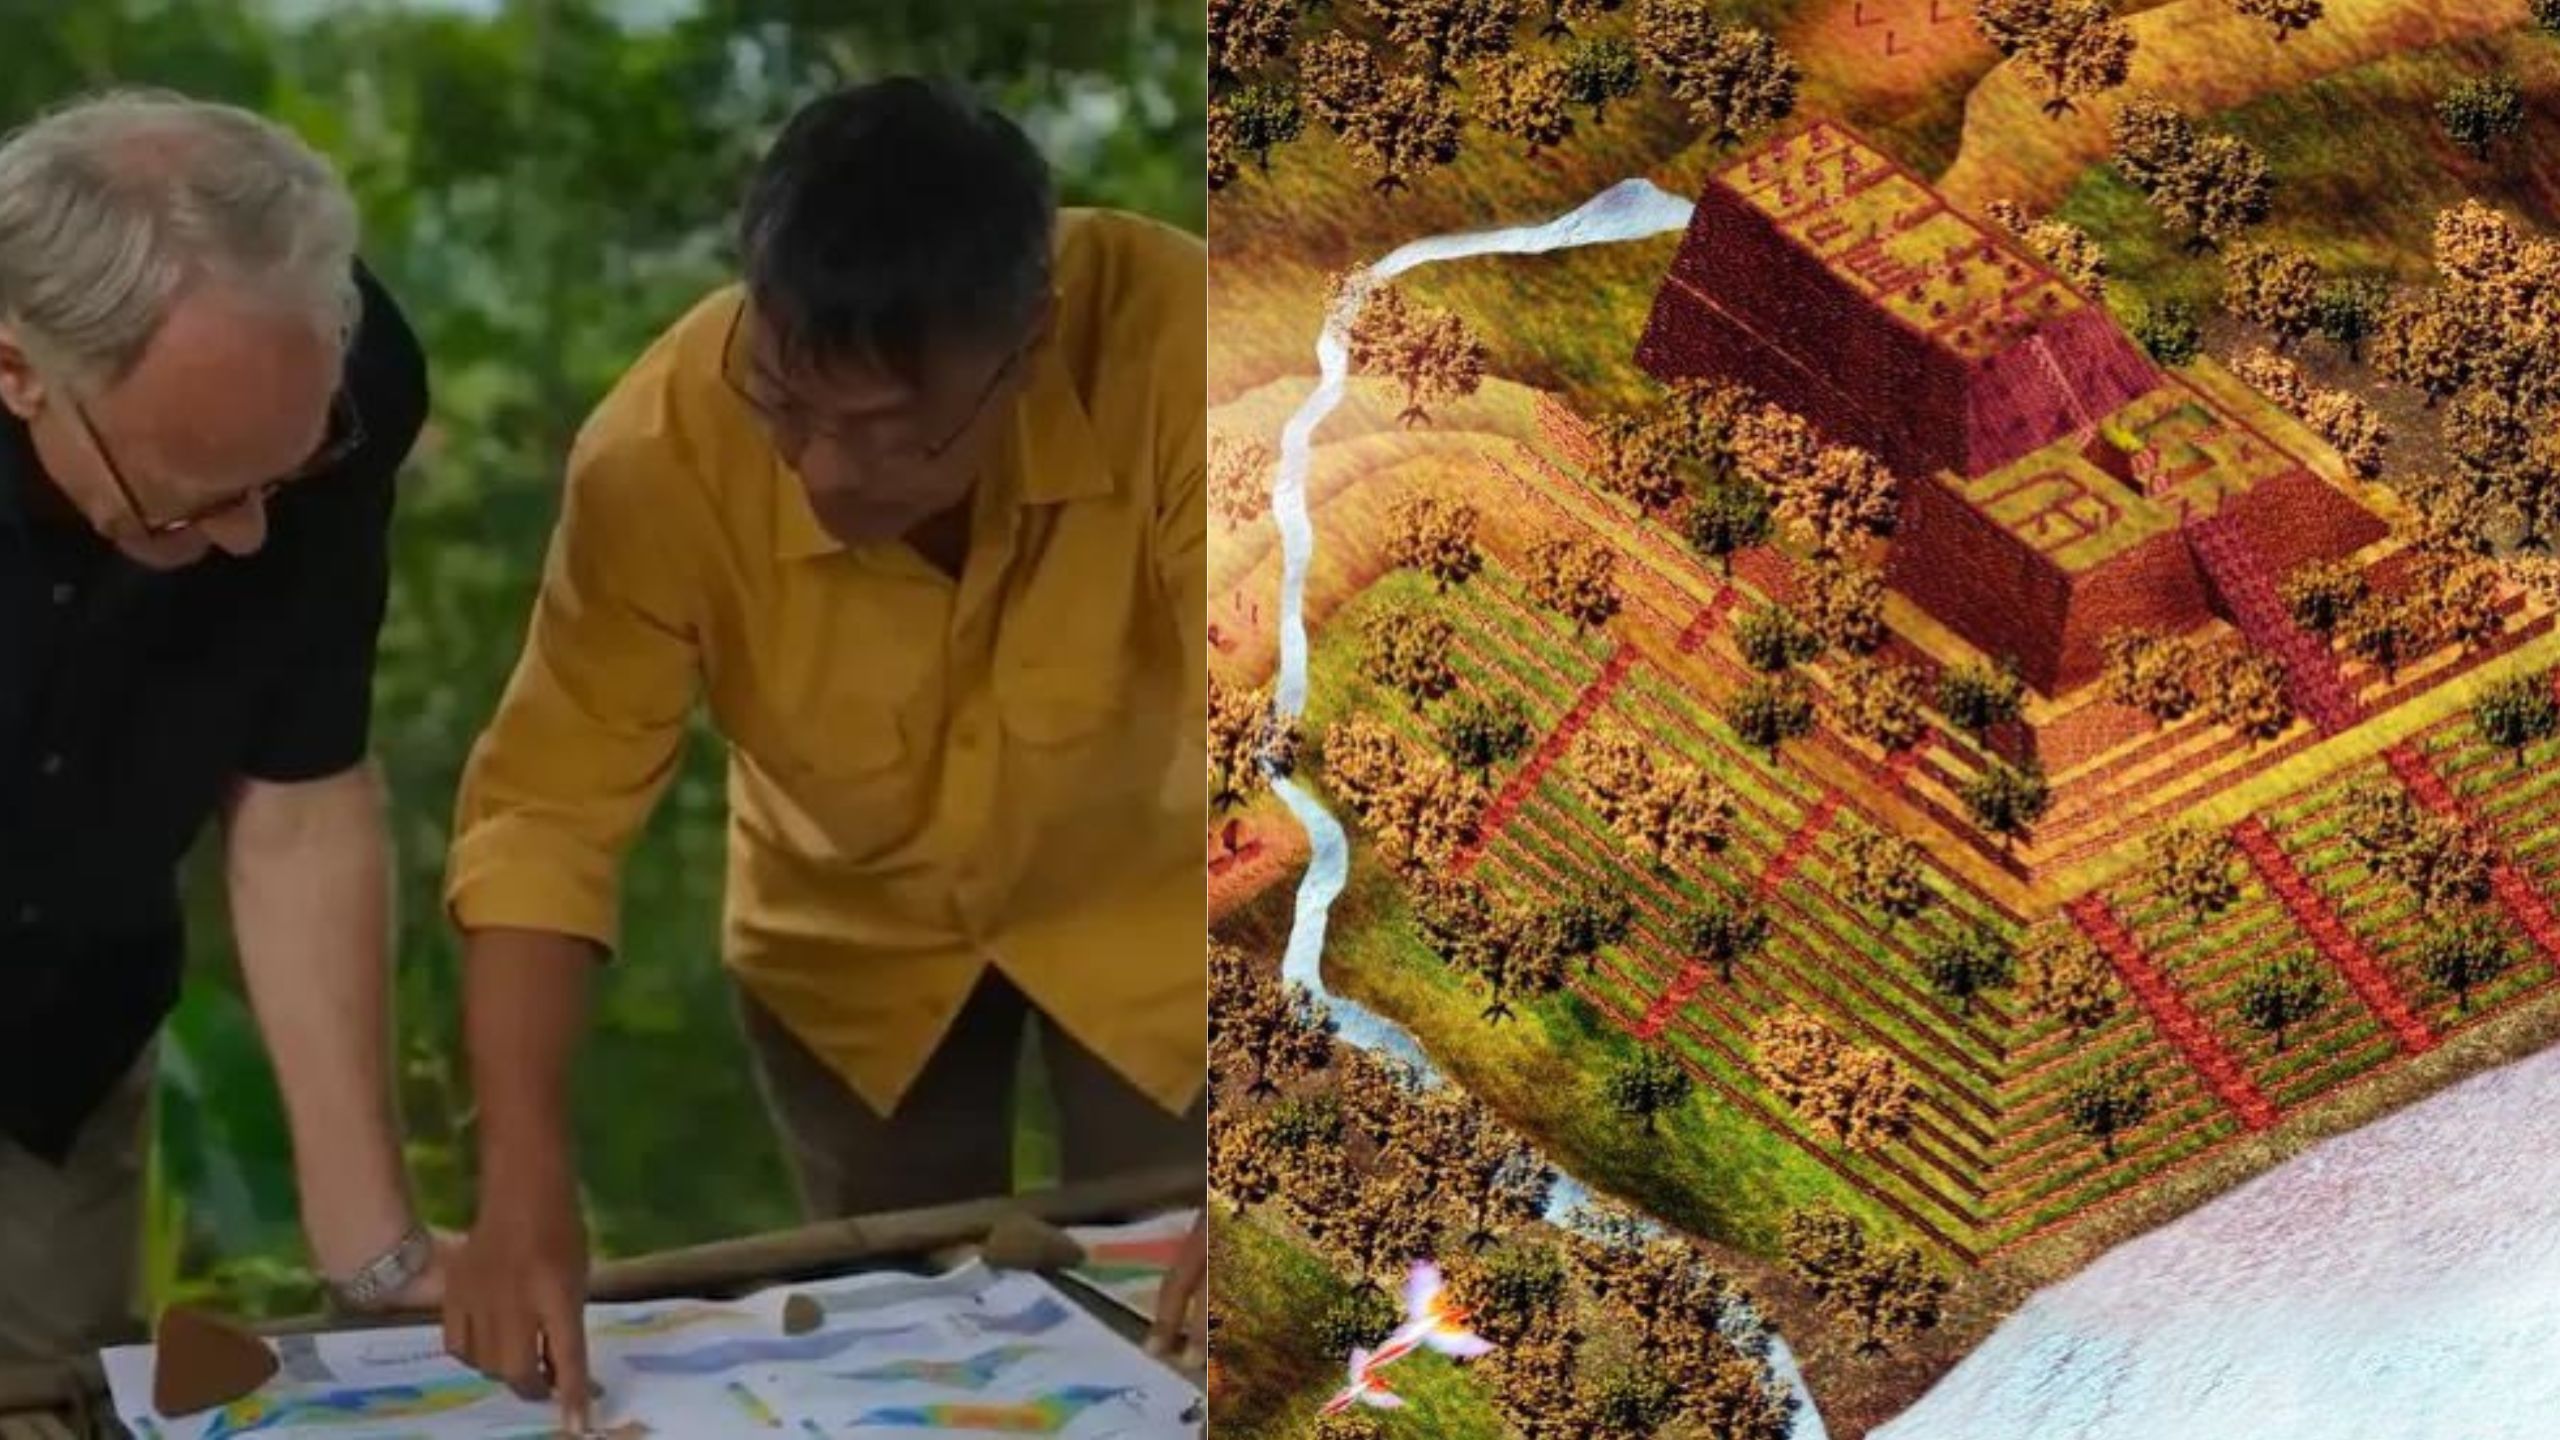 Kenapa Situs Gunung Padang di Hentikan? Beberapa Alasan dan Isu Kontroversial yang Menyebabkan Dihentikan